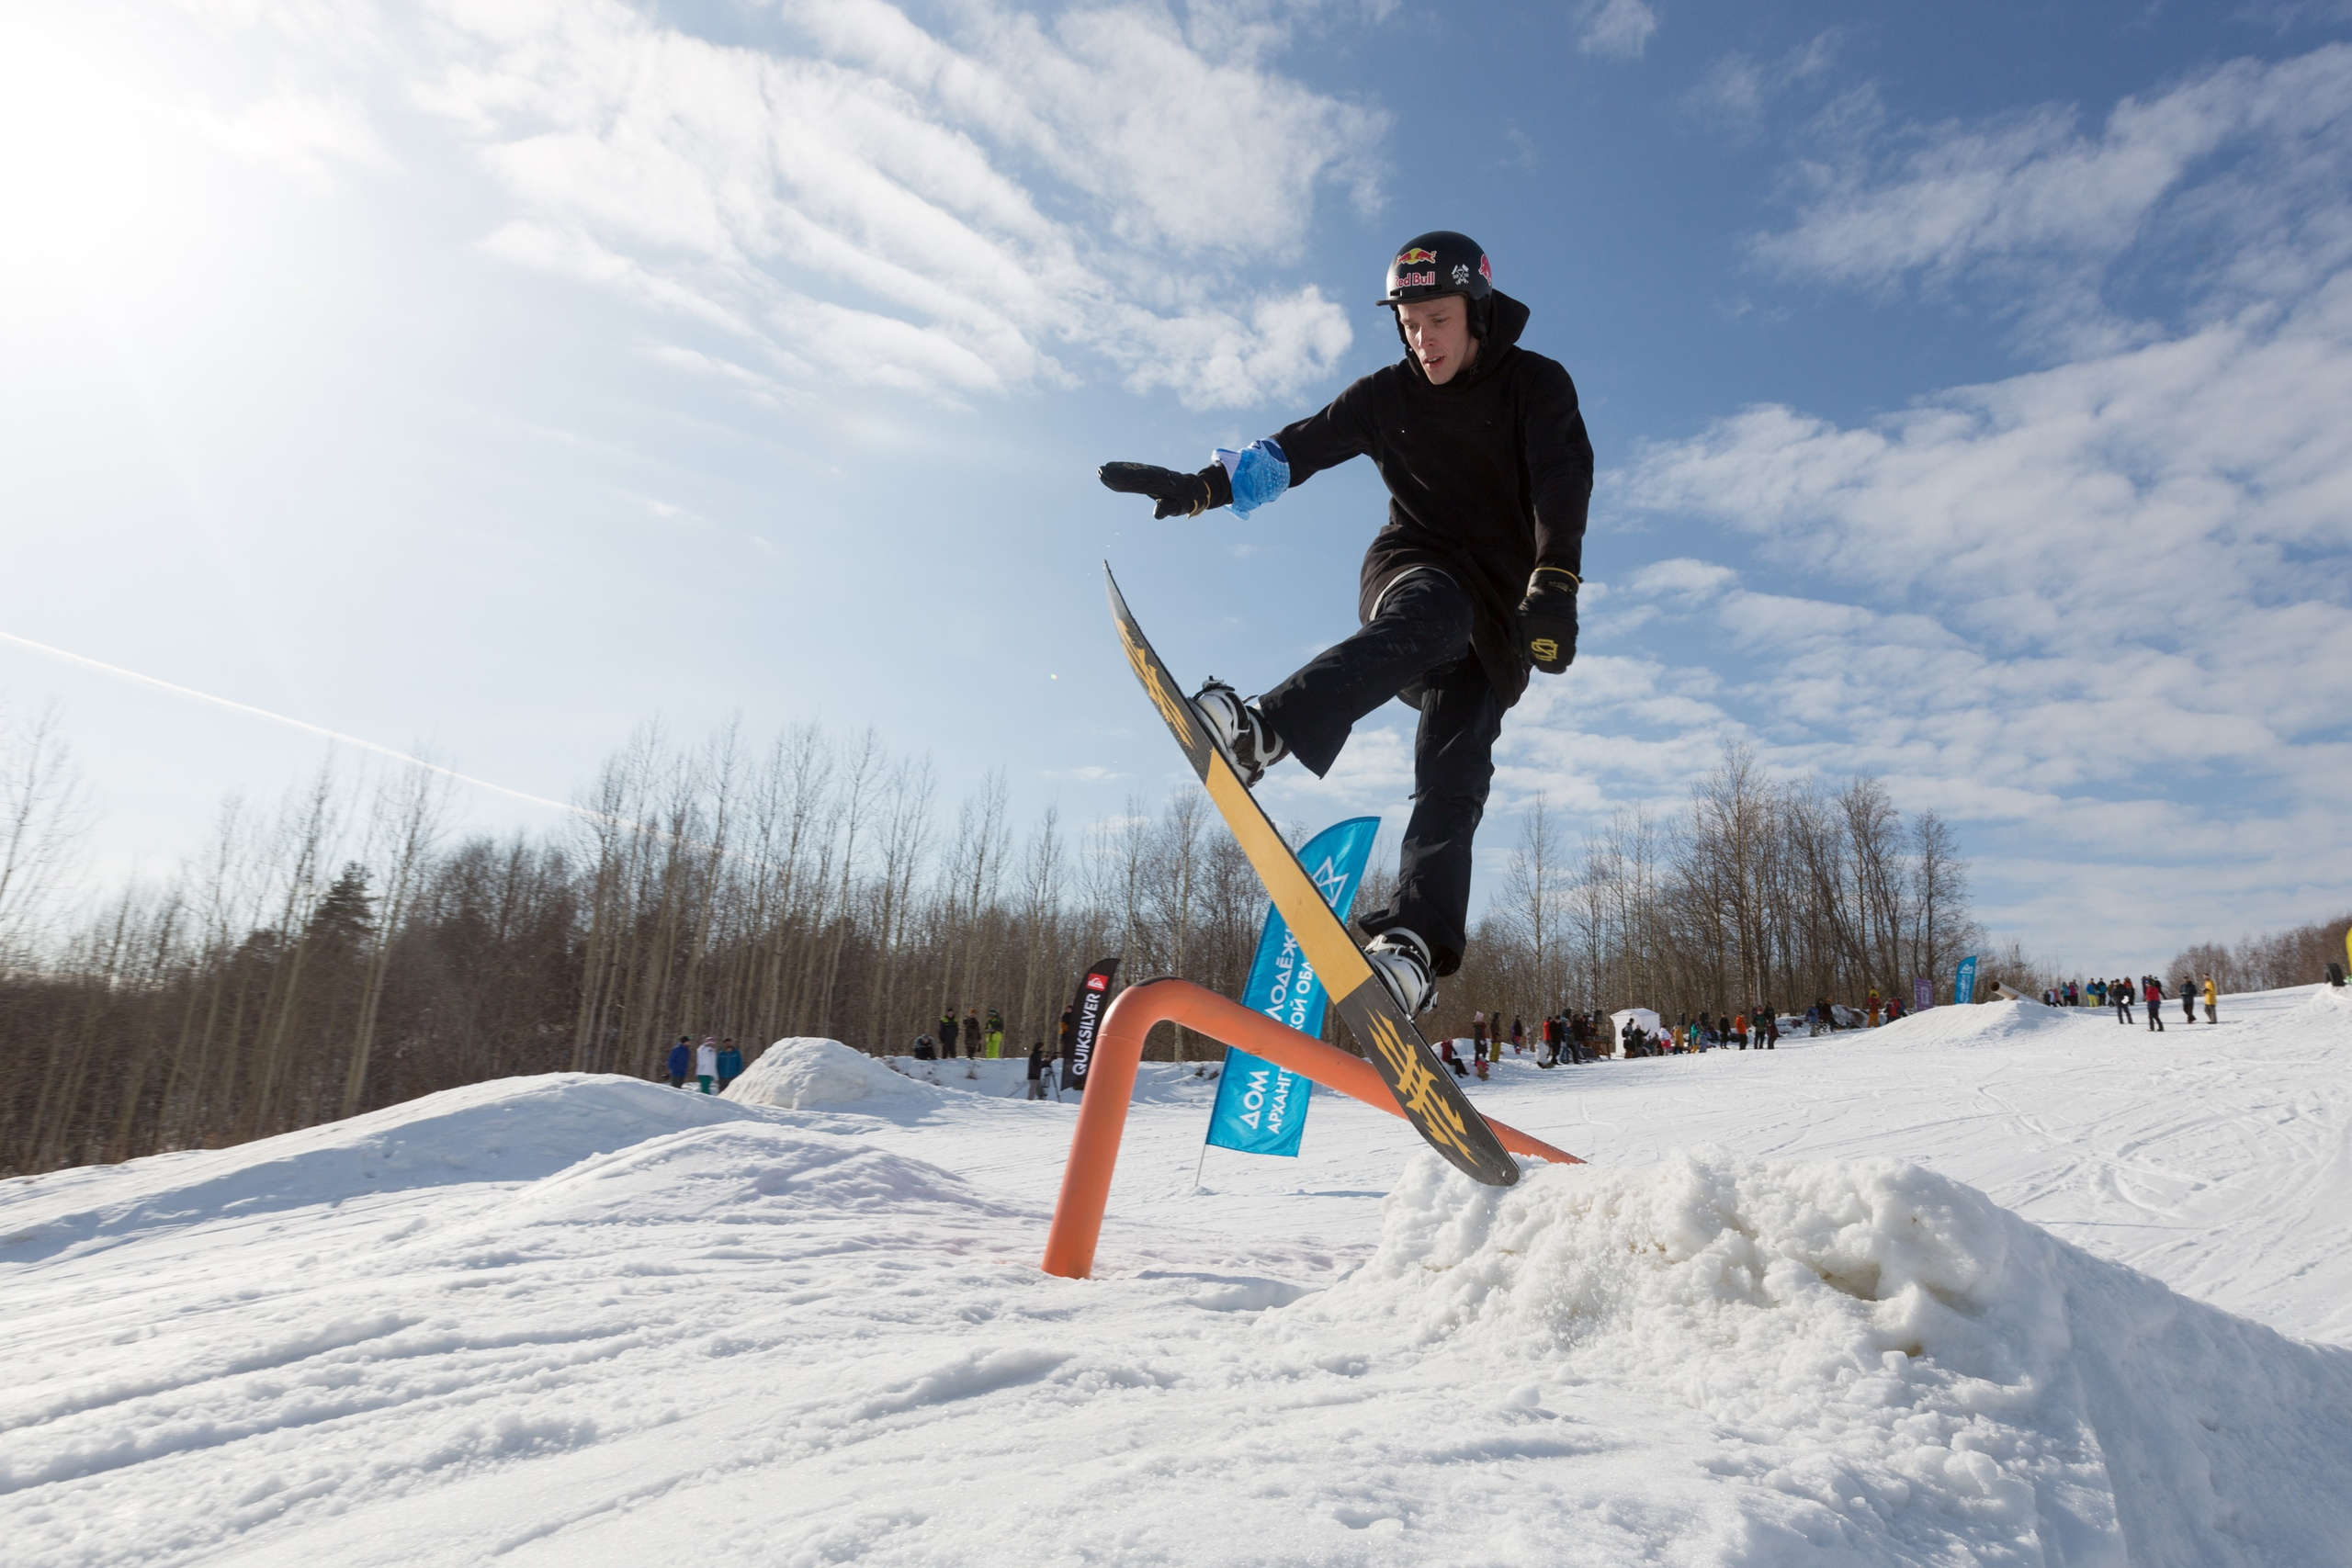 Травмы в сноубординге — дело обычное, но лучше их получать как можно реже. Поможет в этом хорошая защита